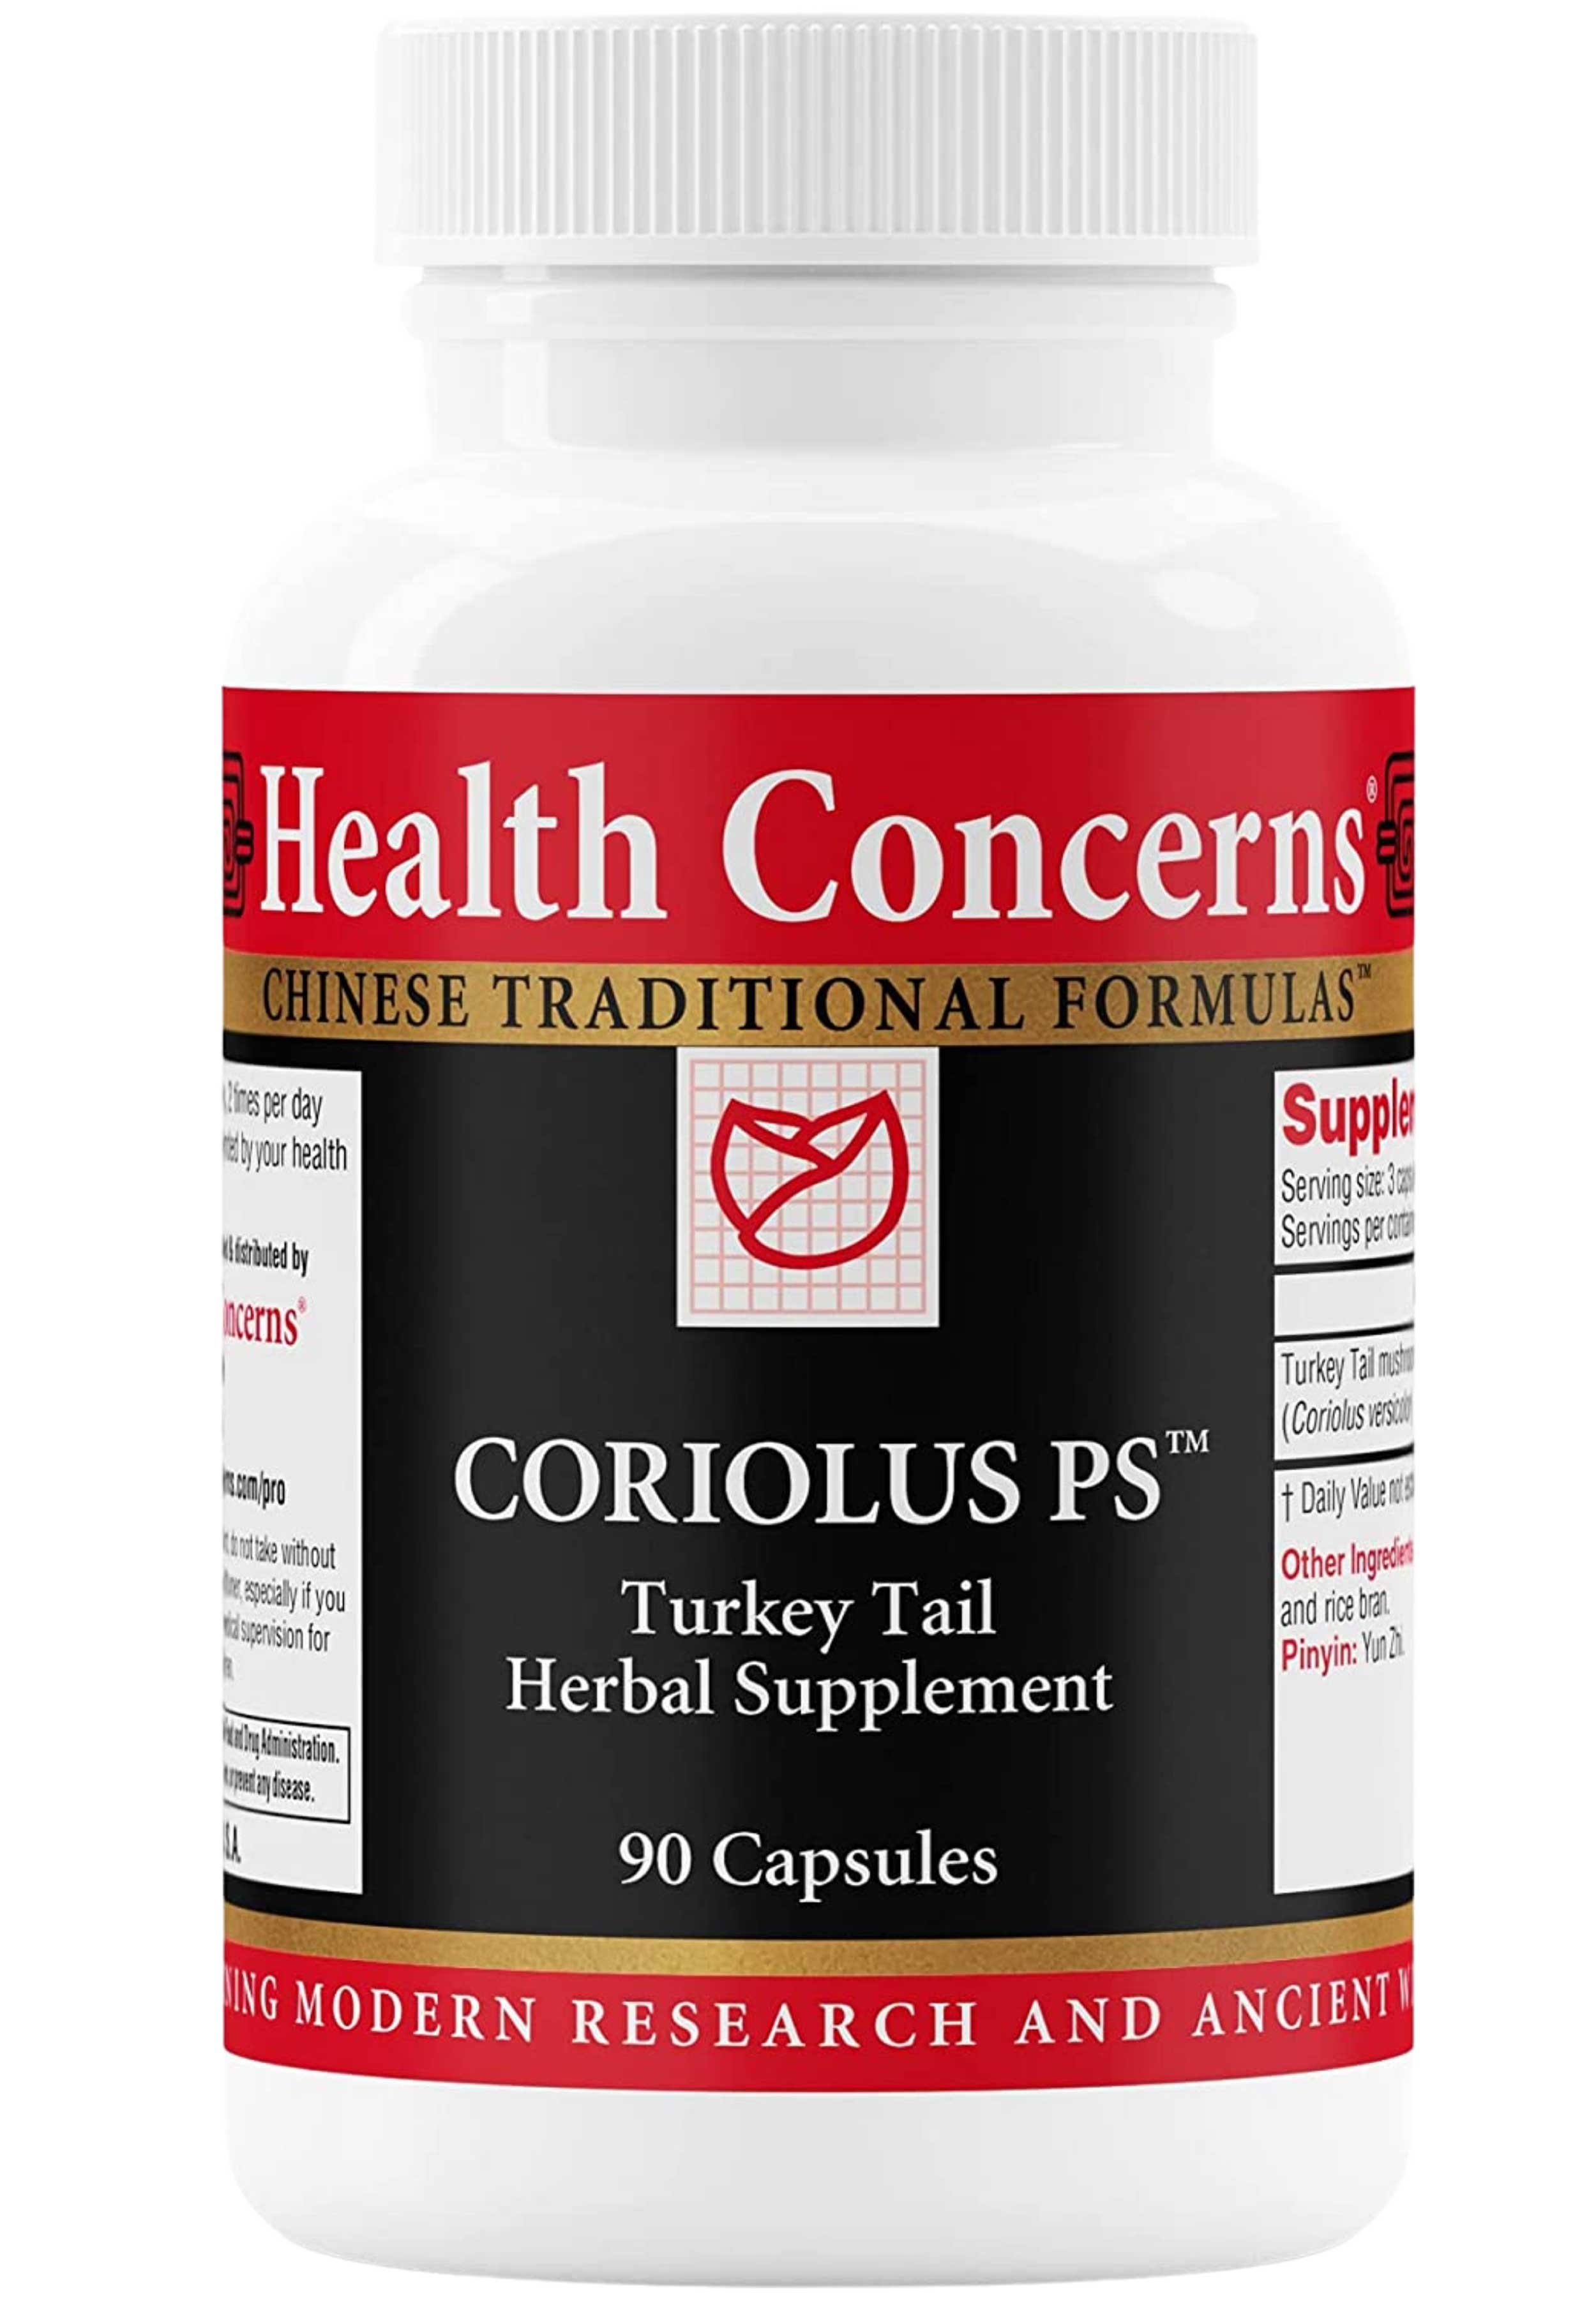 Health Concerns Coriolus PS